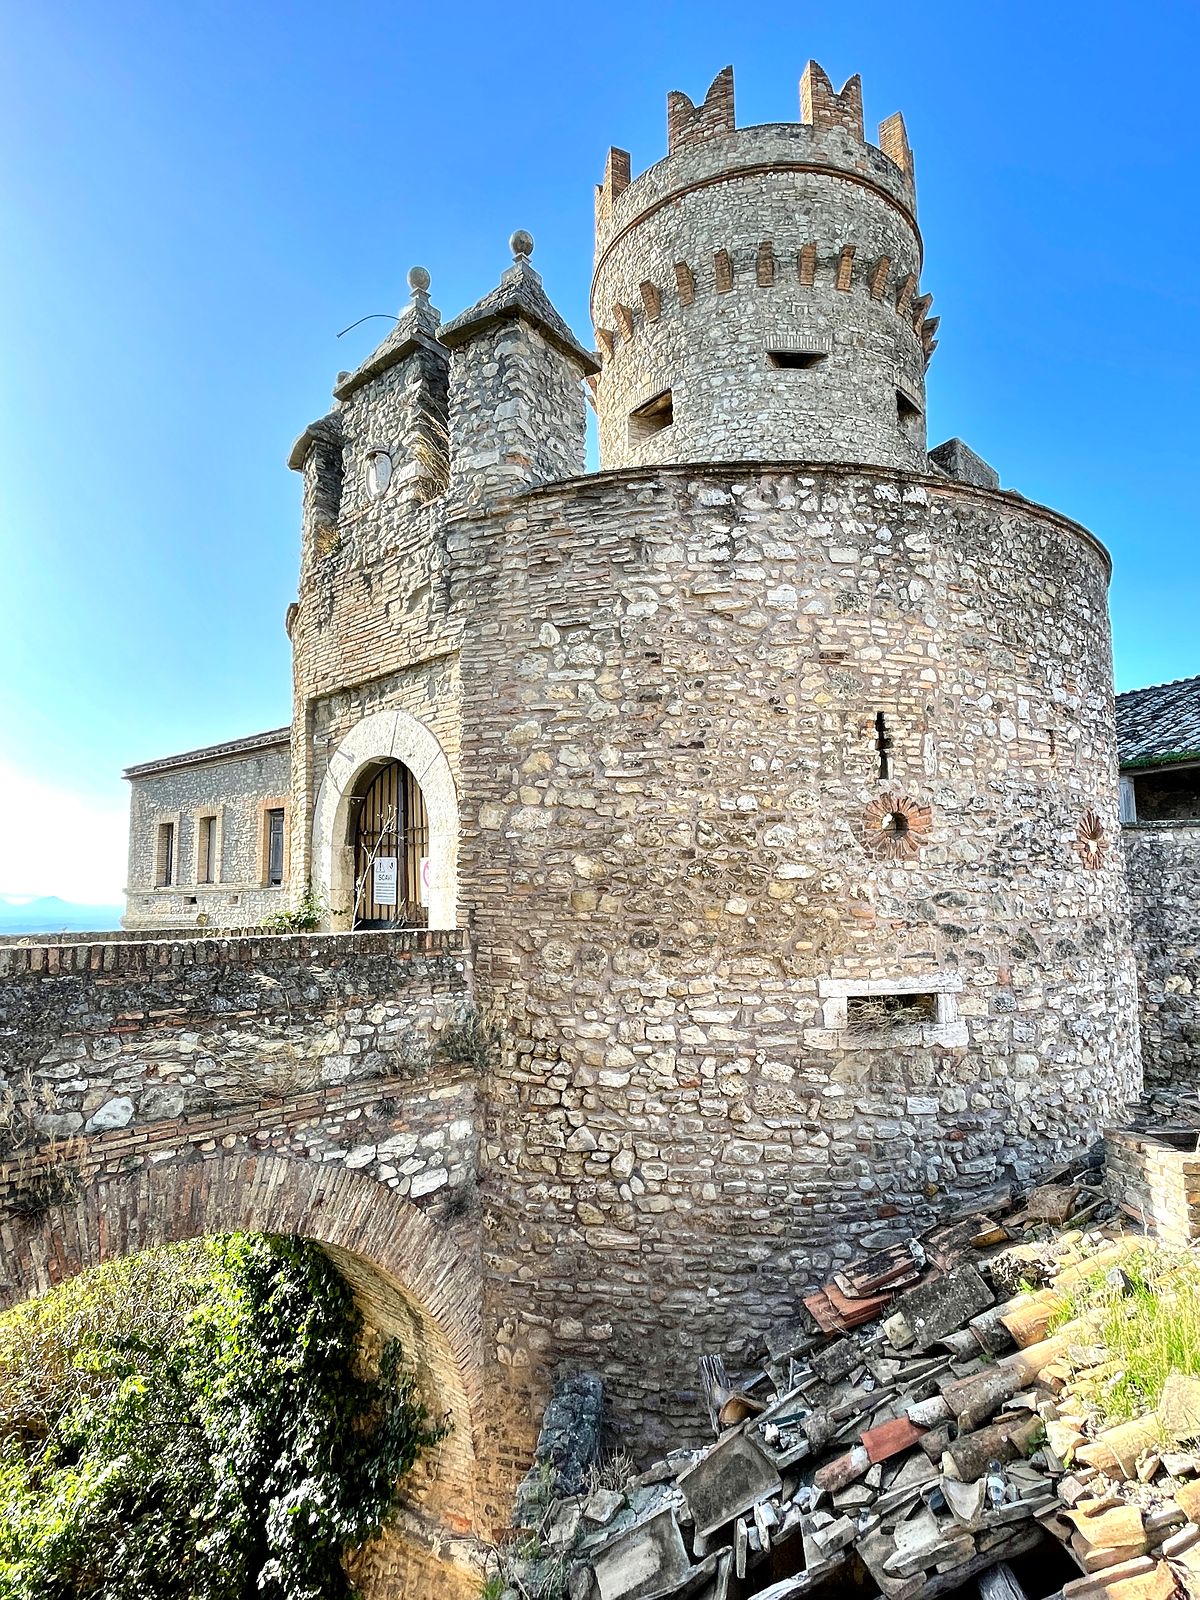 Nazzano Castle in Lazio Region